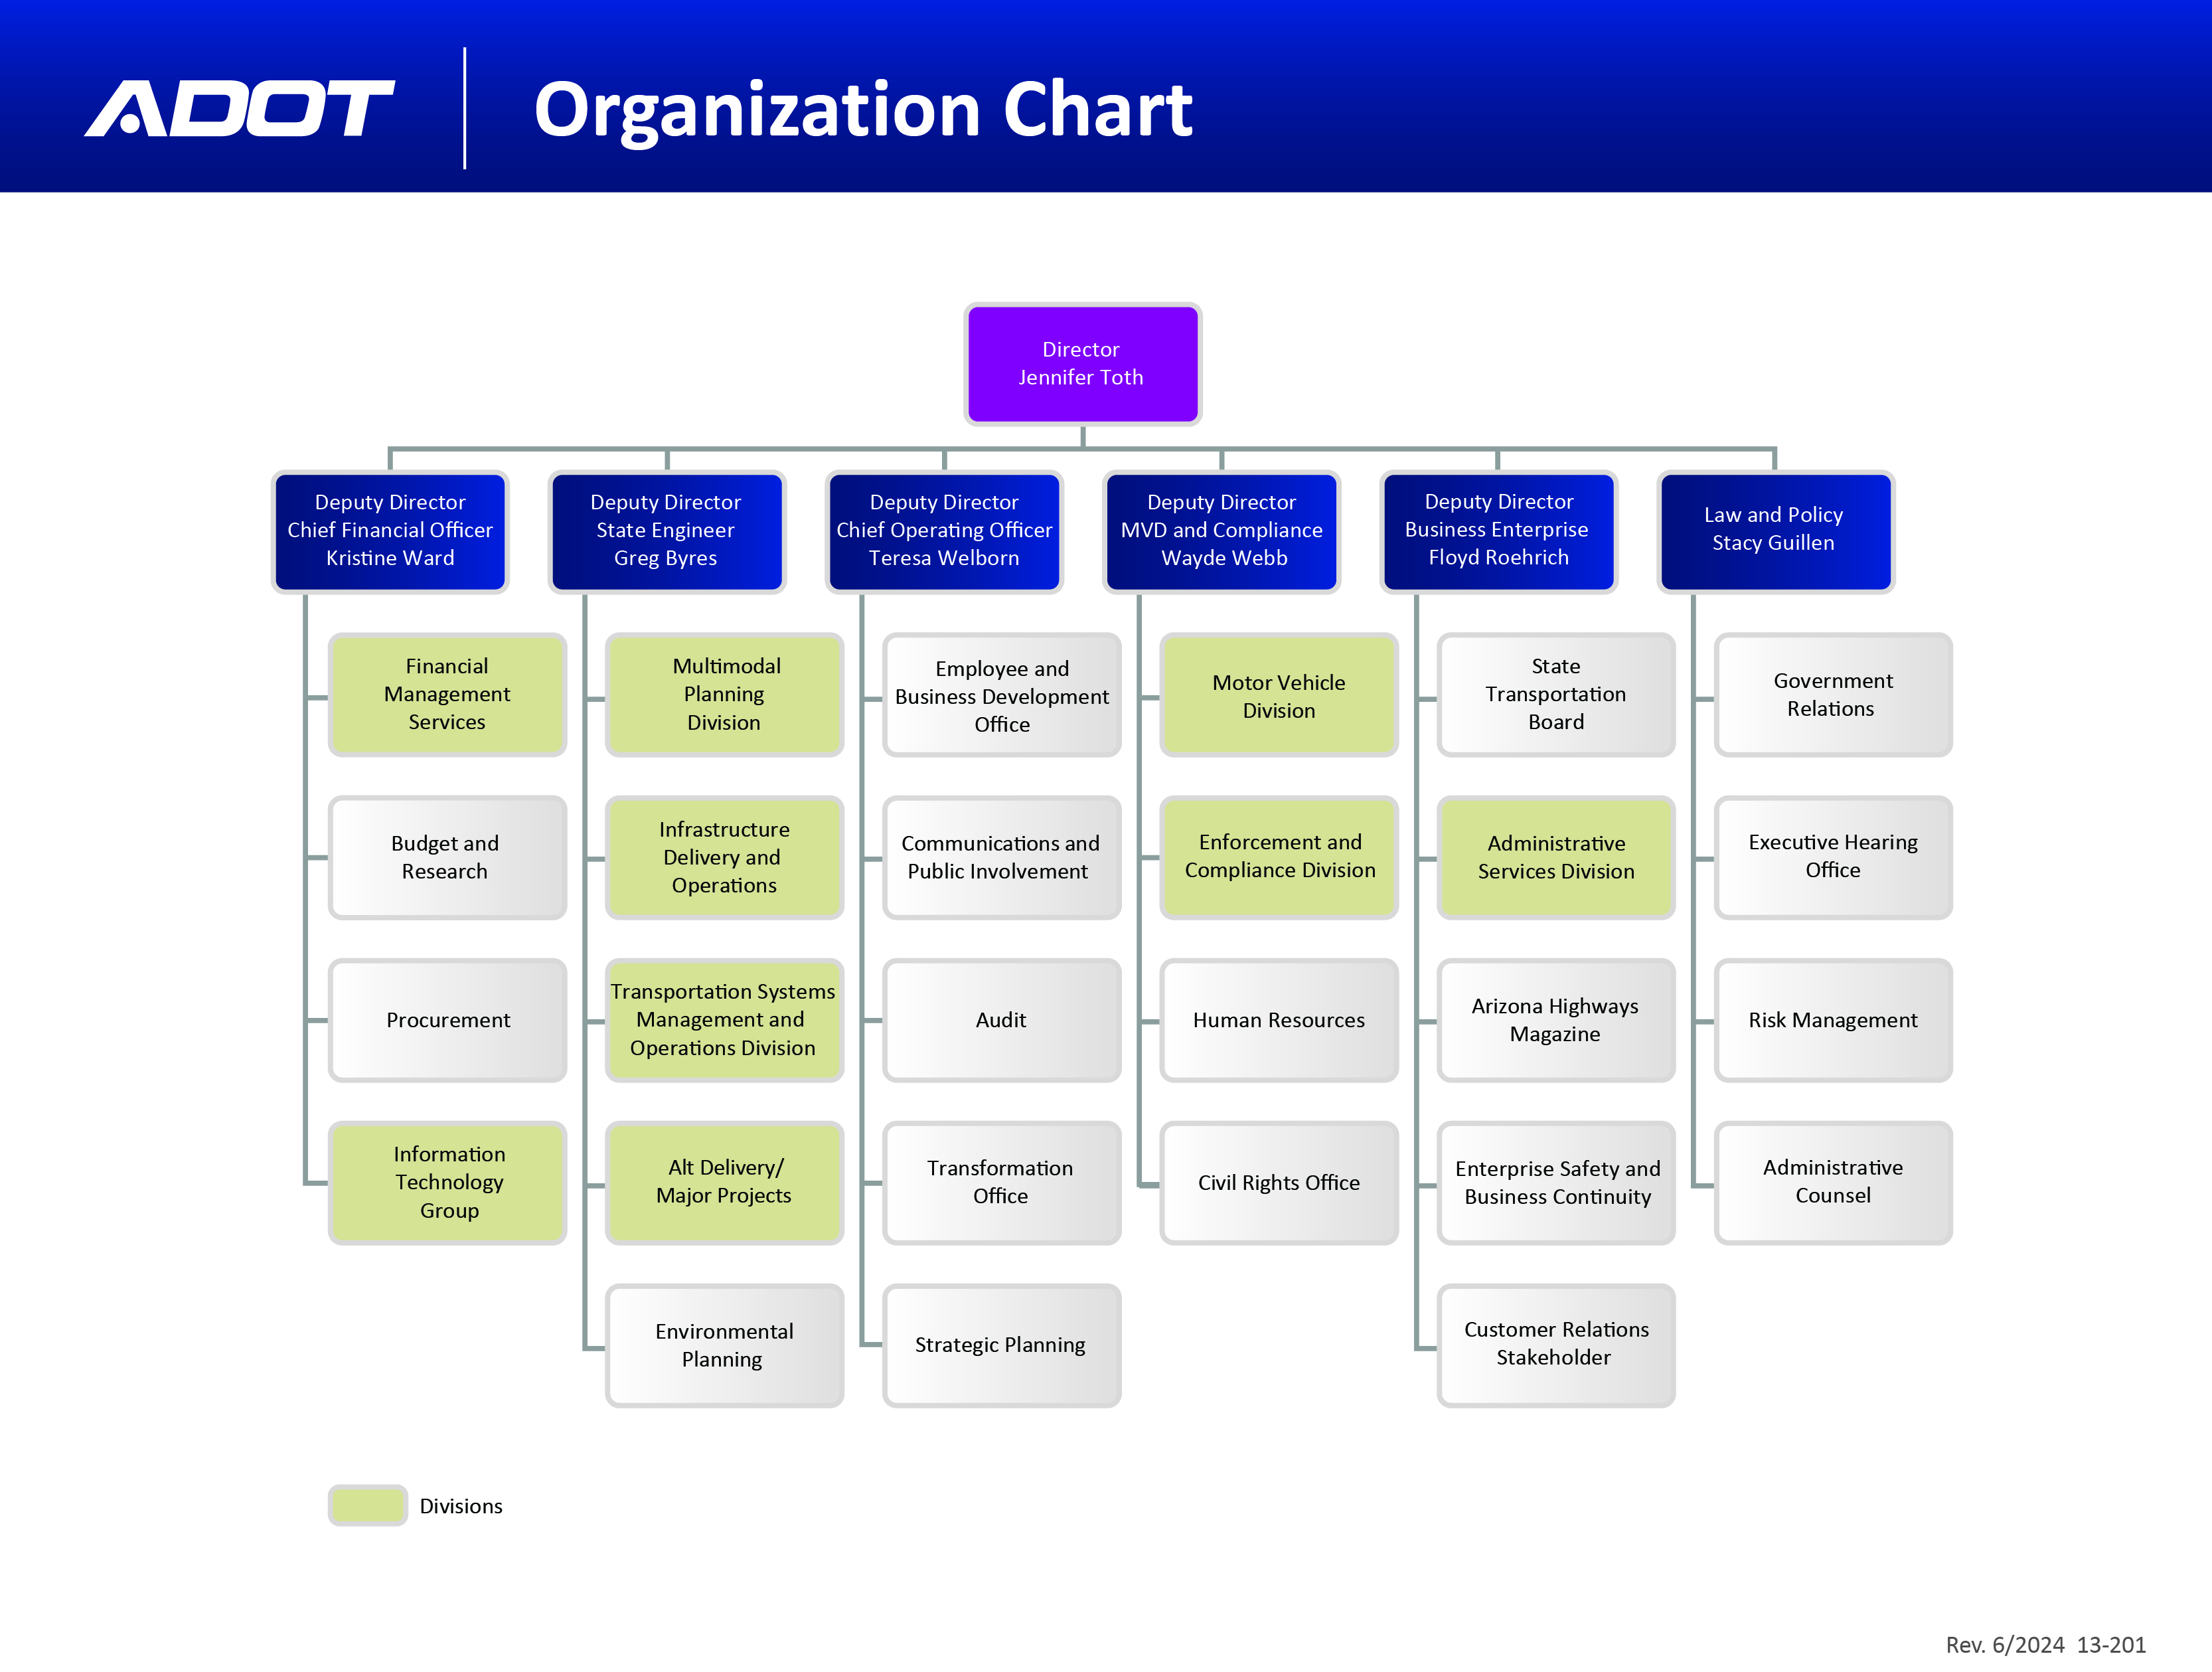 ADOT org chart